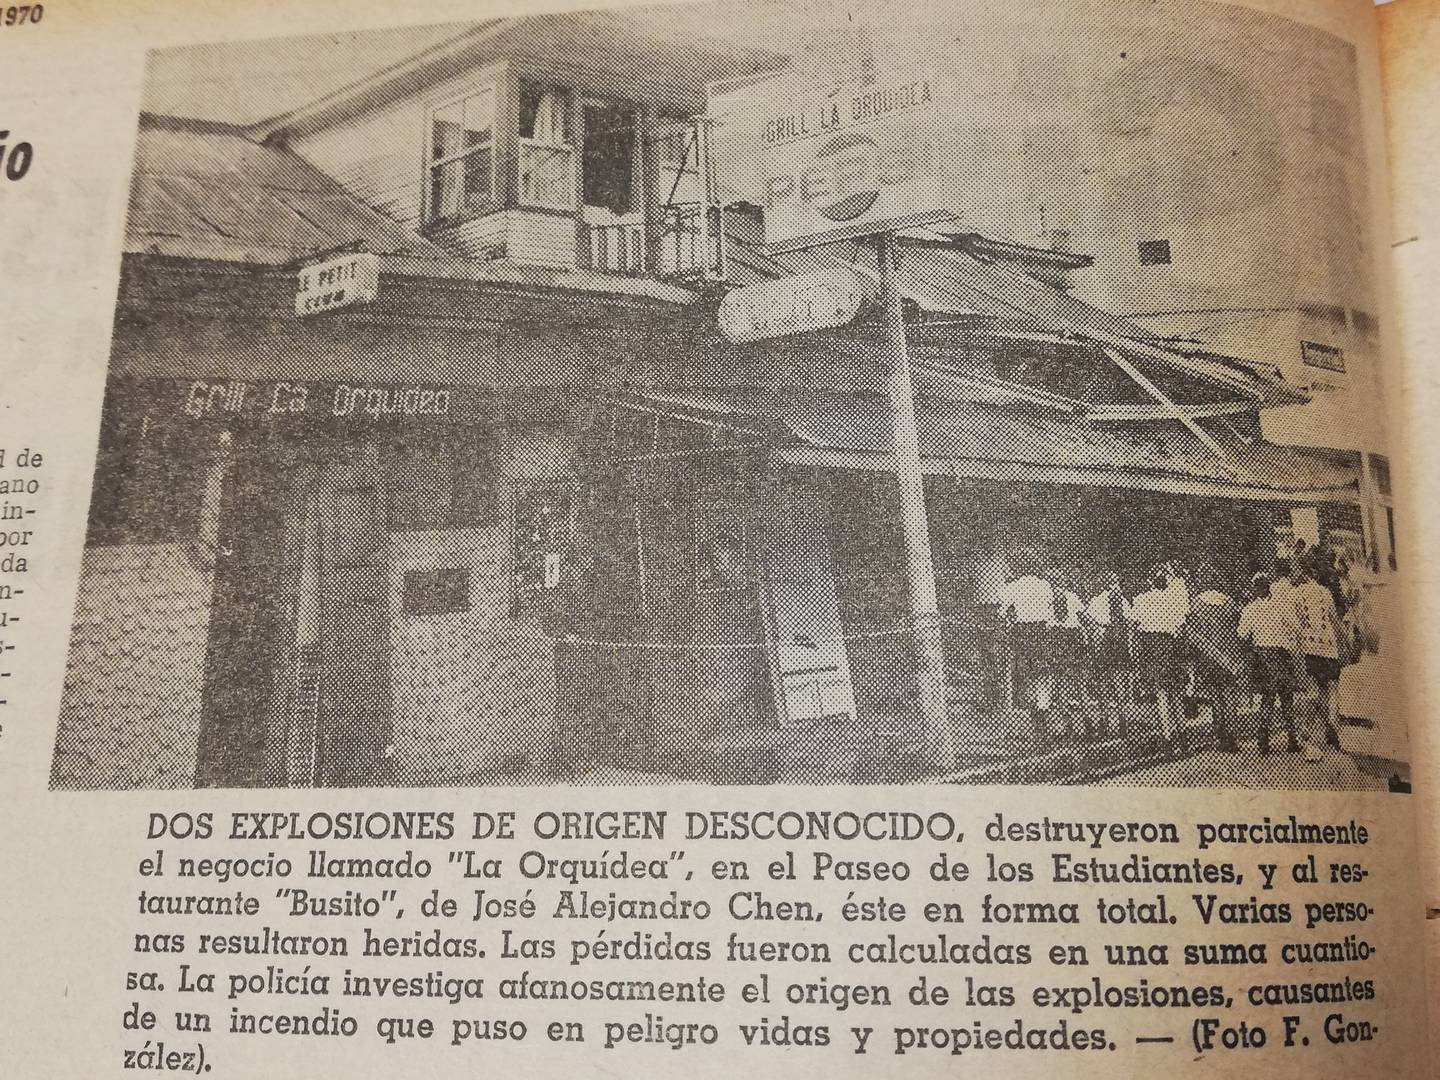 El 12 de octubre de 1970, Costa Rica vivió lo que se considera como la primera explosión, registrada por los medios de comunicación, de cilindros de gas, Jorge Alberto Cordero Chinchilla tenía 14 años y fue uno de los afectados.